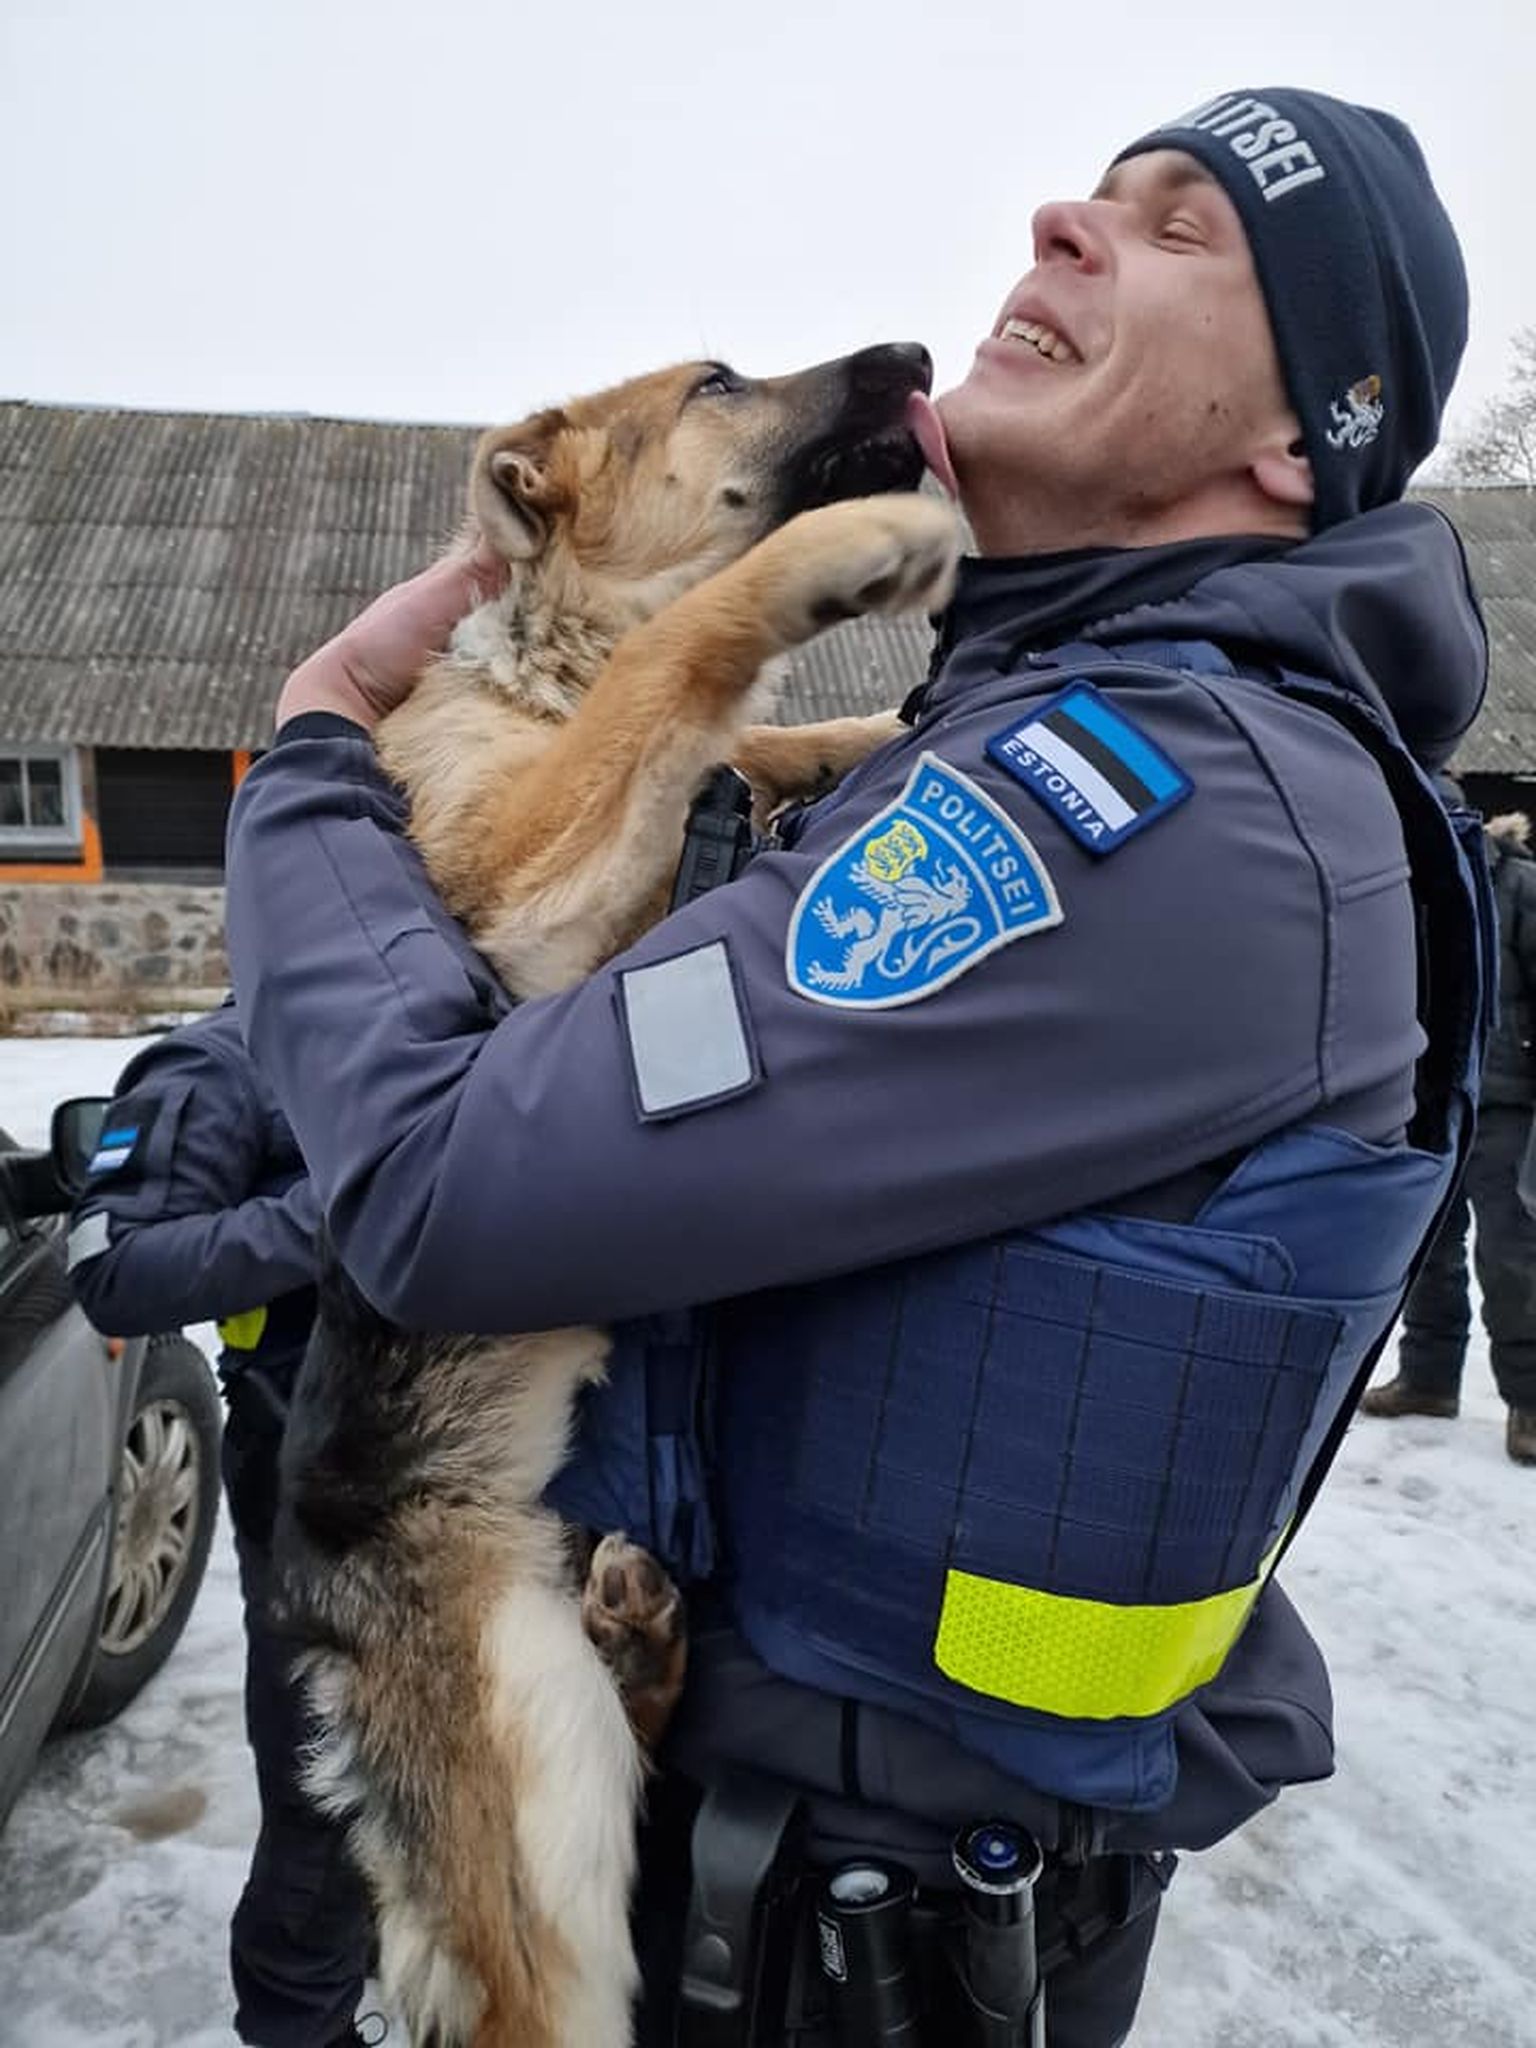 Eesti komissar Rex: kohale tulnud politseinik otsustas ühe koertest endale võtta.